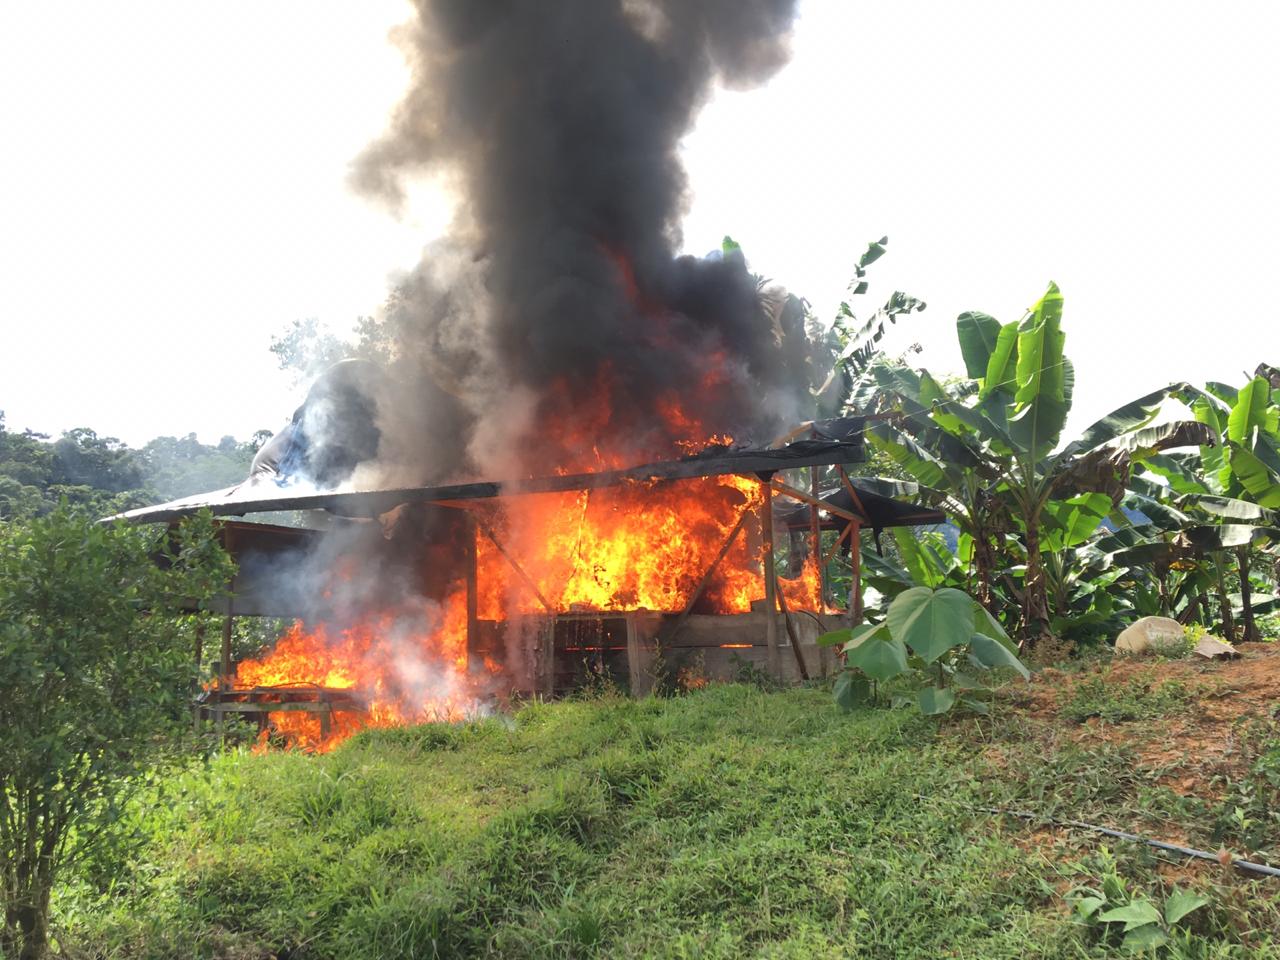 Diez laboratorios para el procesamiento de pasta base de coca fueron destruidos en Chocó